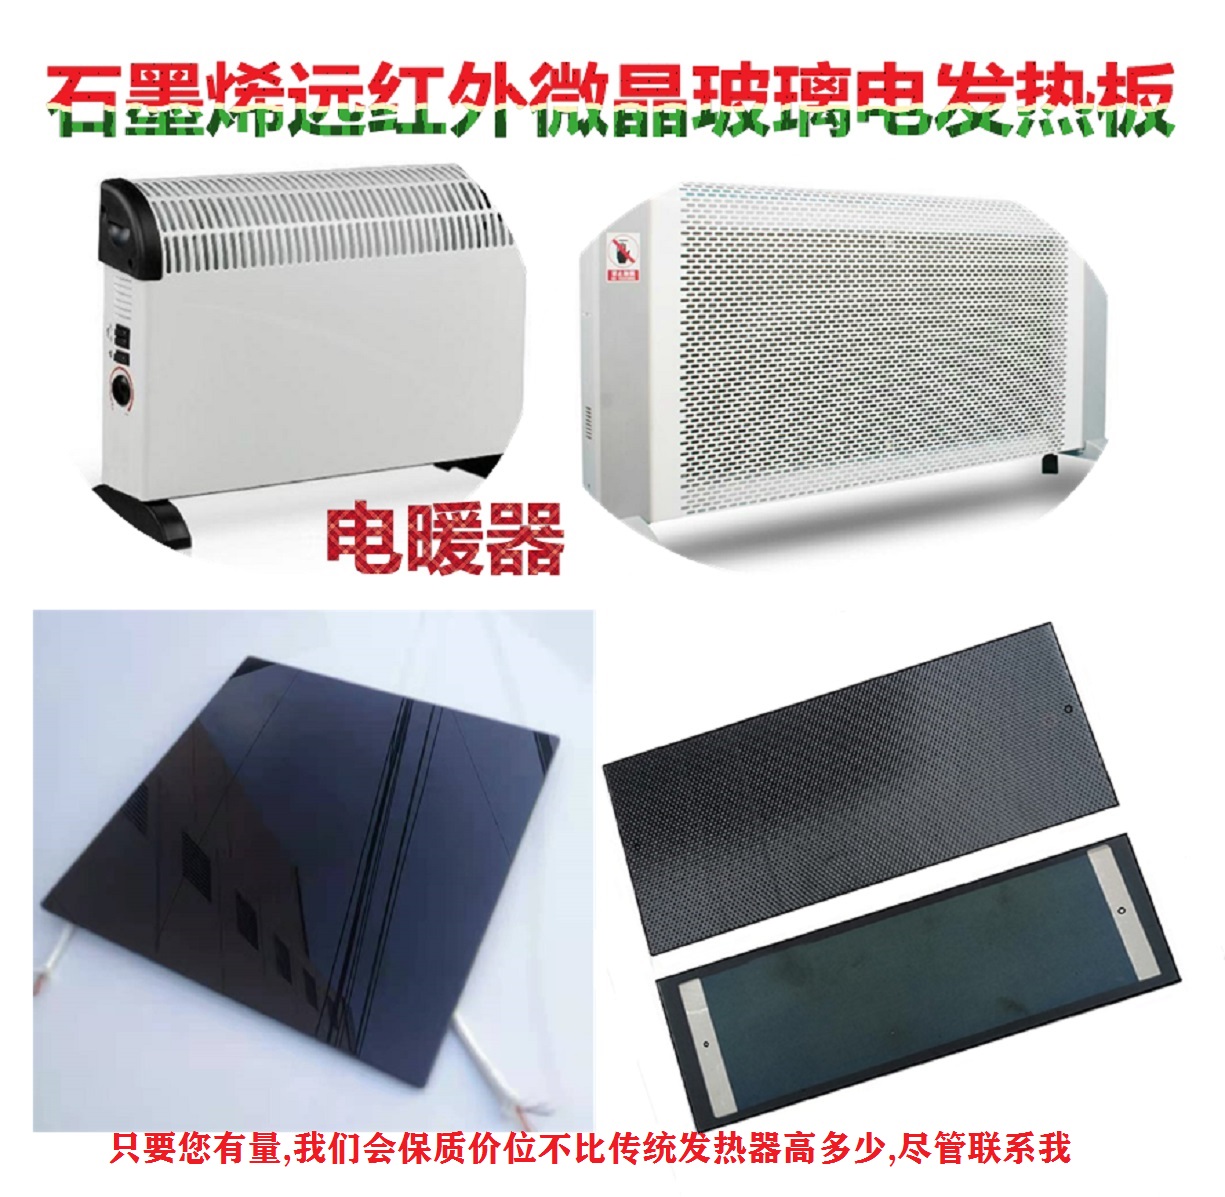 取暖炉远红外微晶节能电发热板电热器